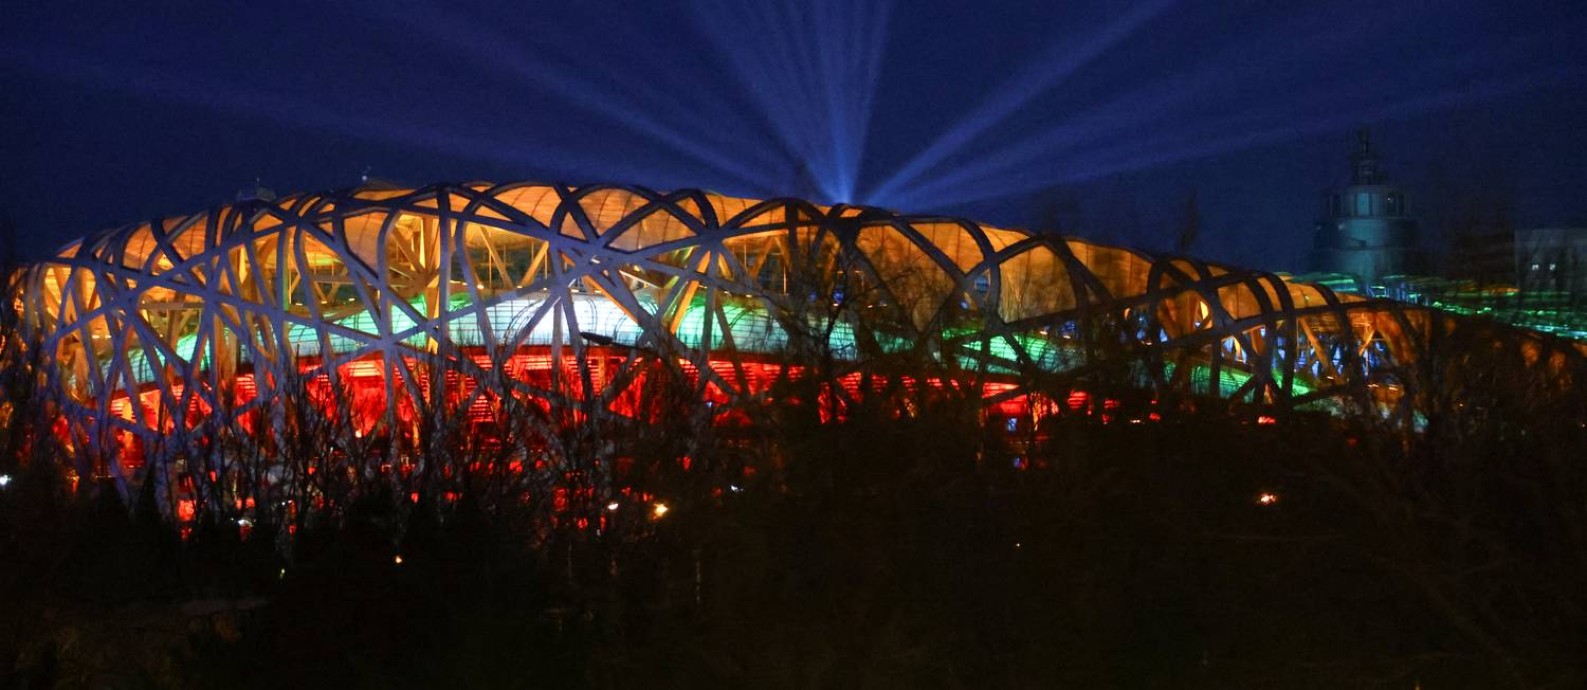 Show de luzes no Ninho do Pássaro para nova festa olímpica Foto: FABRIZIO BENSCH / REUTERS